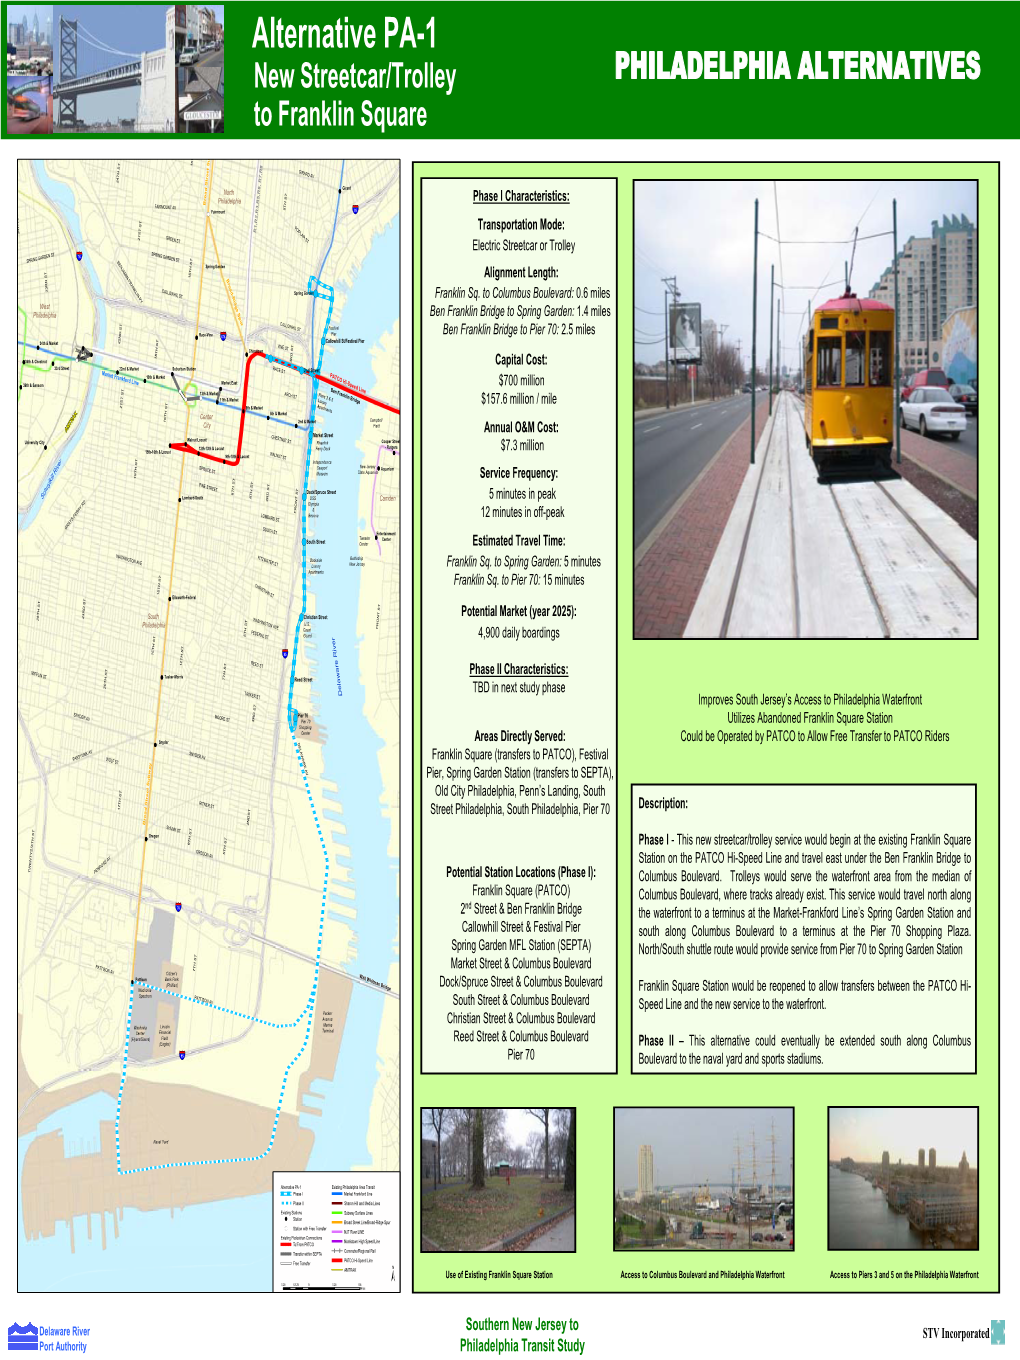 Alternative PA-1 New Streetcar/Trolley PHILADELPHIA ALTERNATIVES to Franklin Square